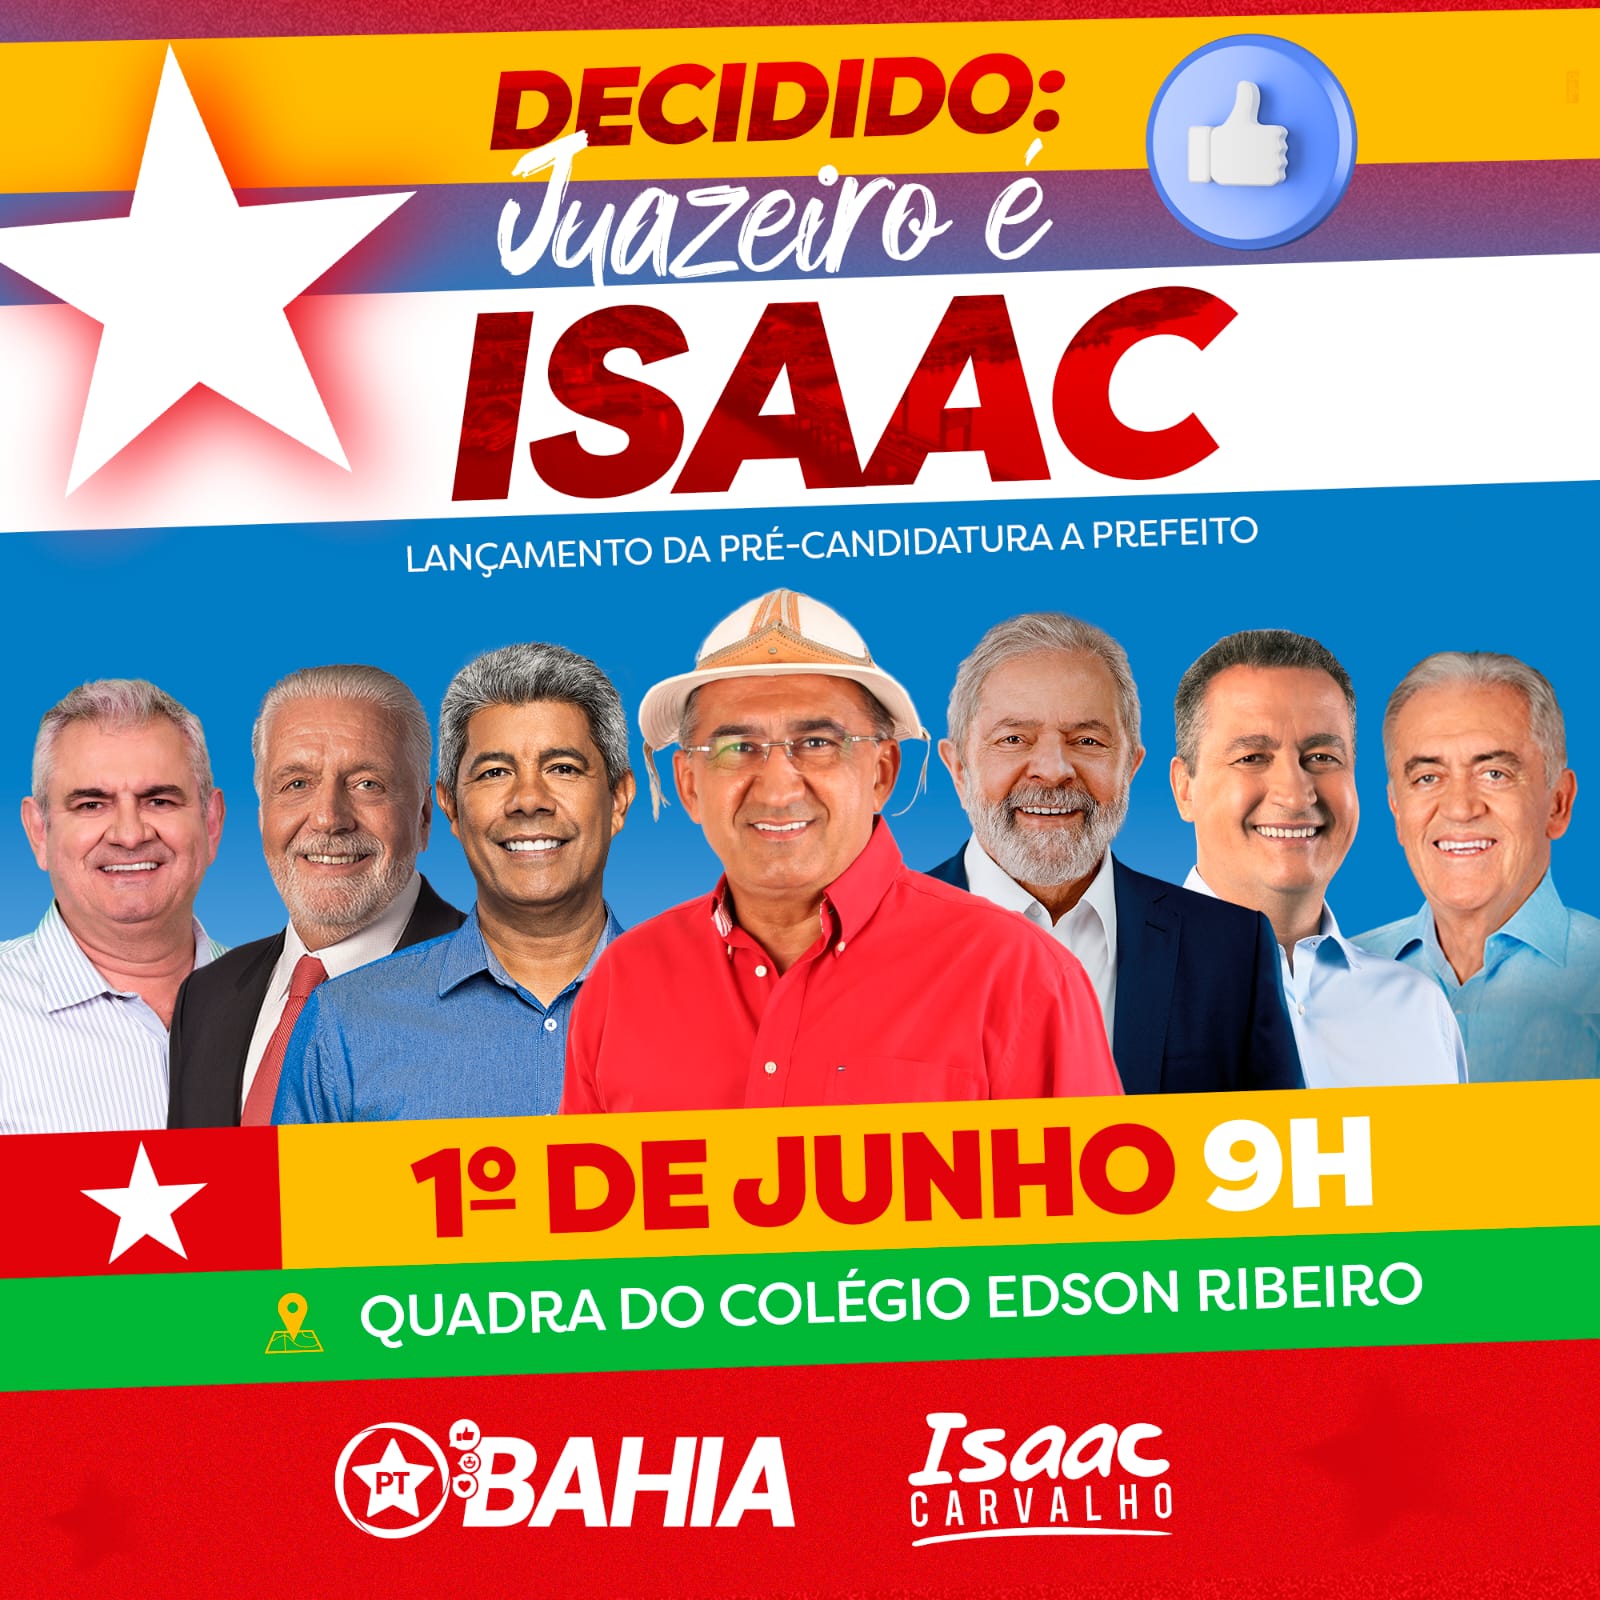 Juazeiro: Pré-candidato Isaac Carvalho mostra confiança e convoca seguidores para ato de homologação de sua pré-candidatura, neste sábado (31)